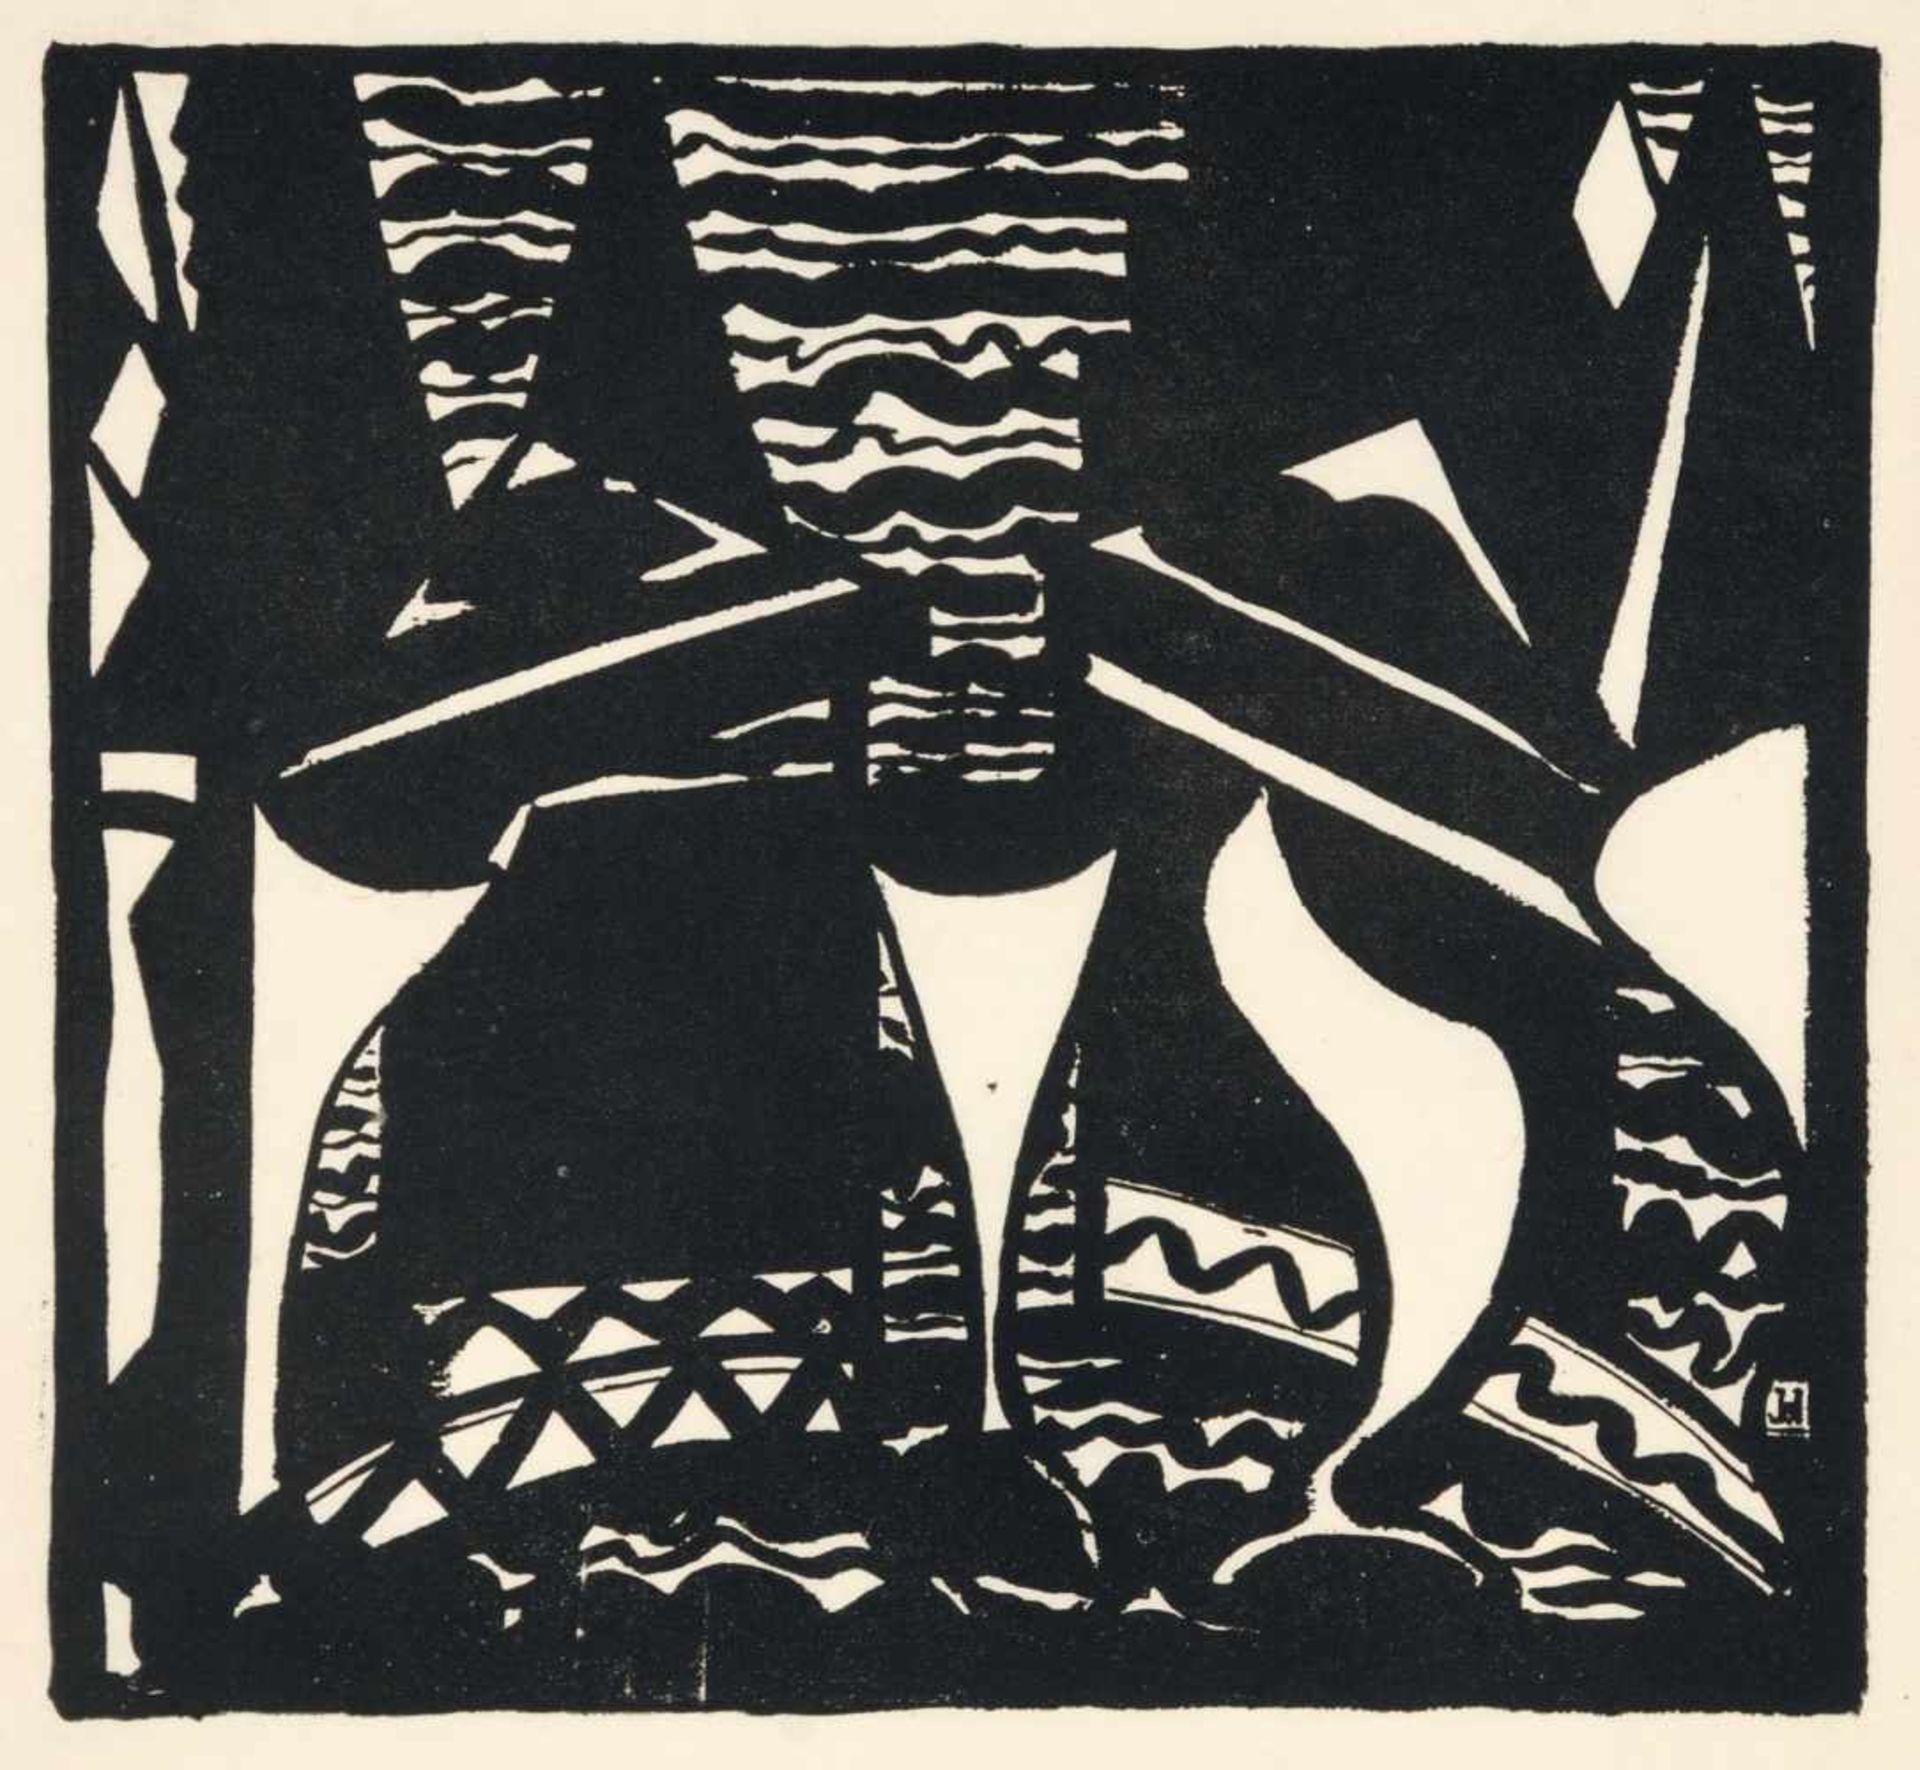 Jacoba Heemskerck van Beest "Compositie, Zeilschepen" (Komposition, Segelschiffe). 1918.